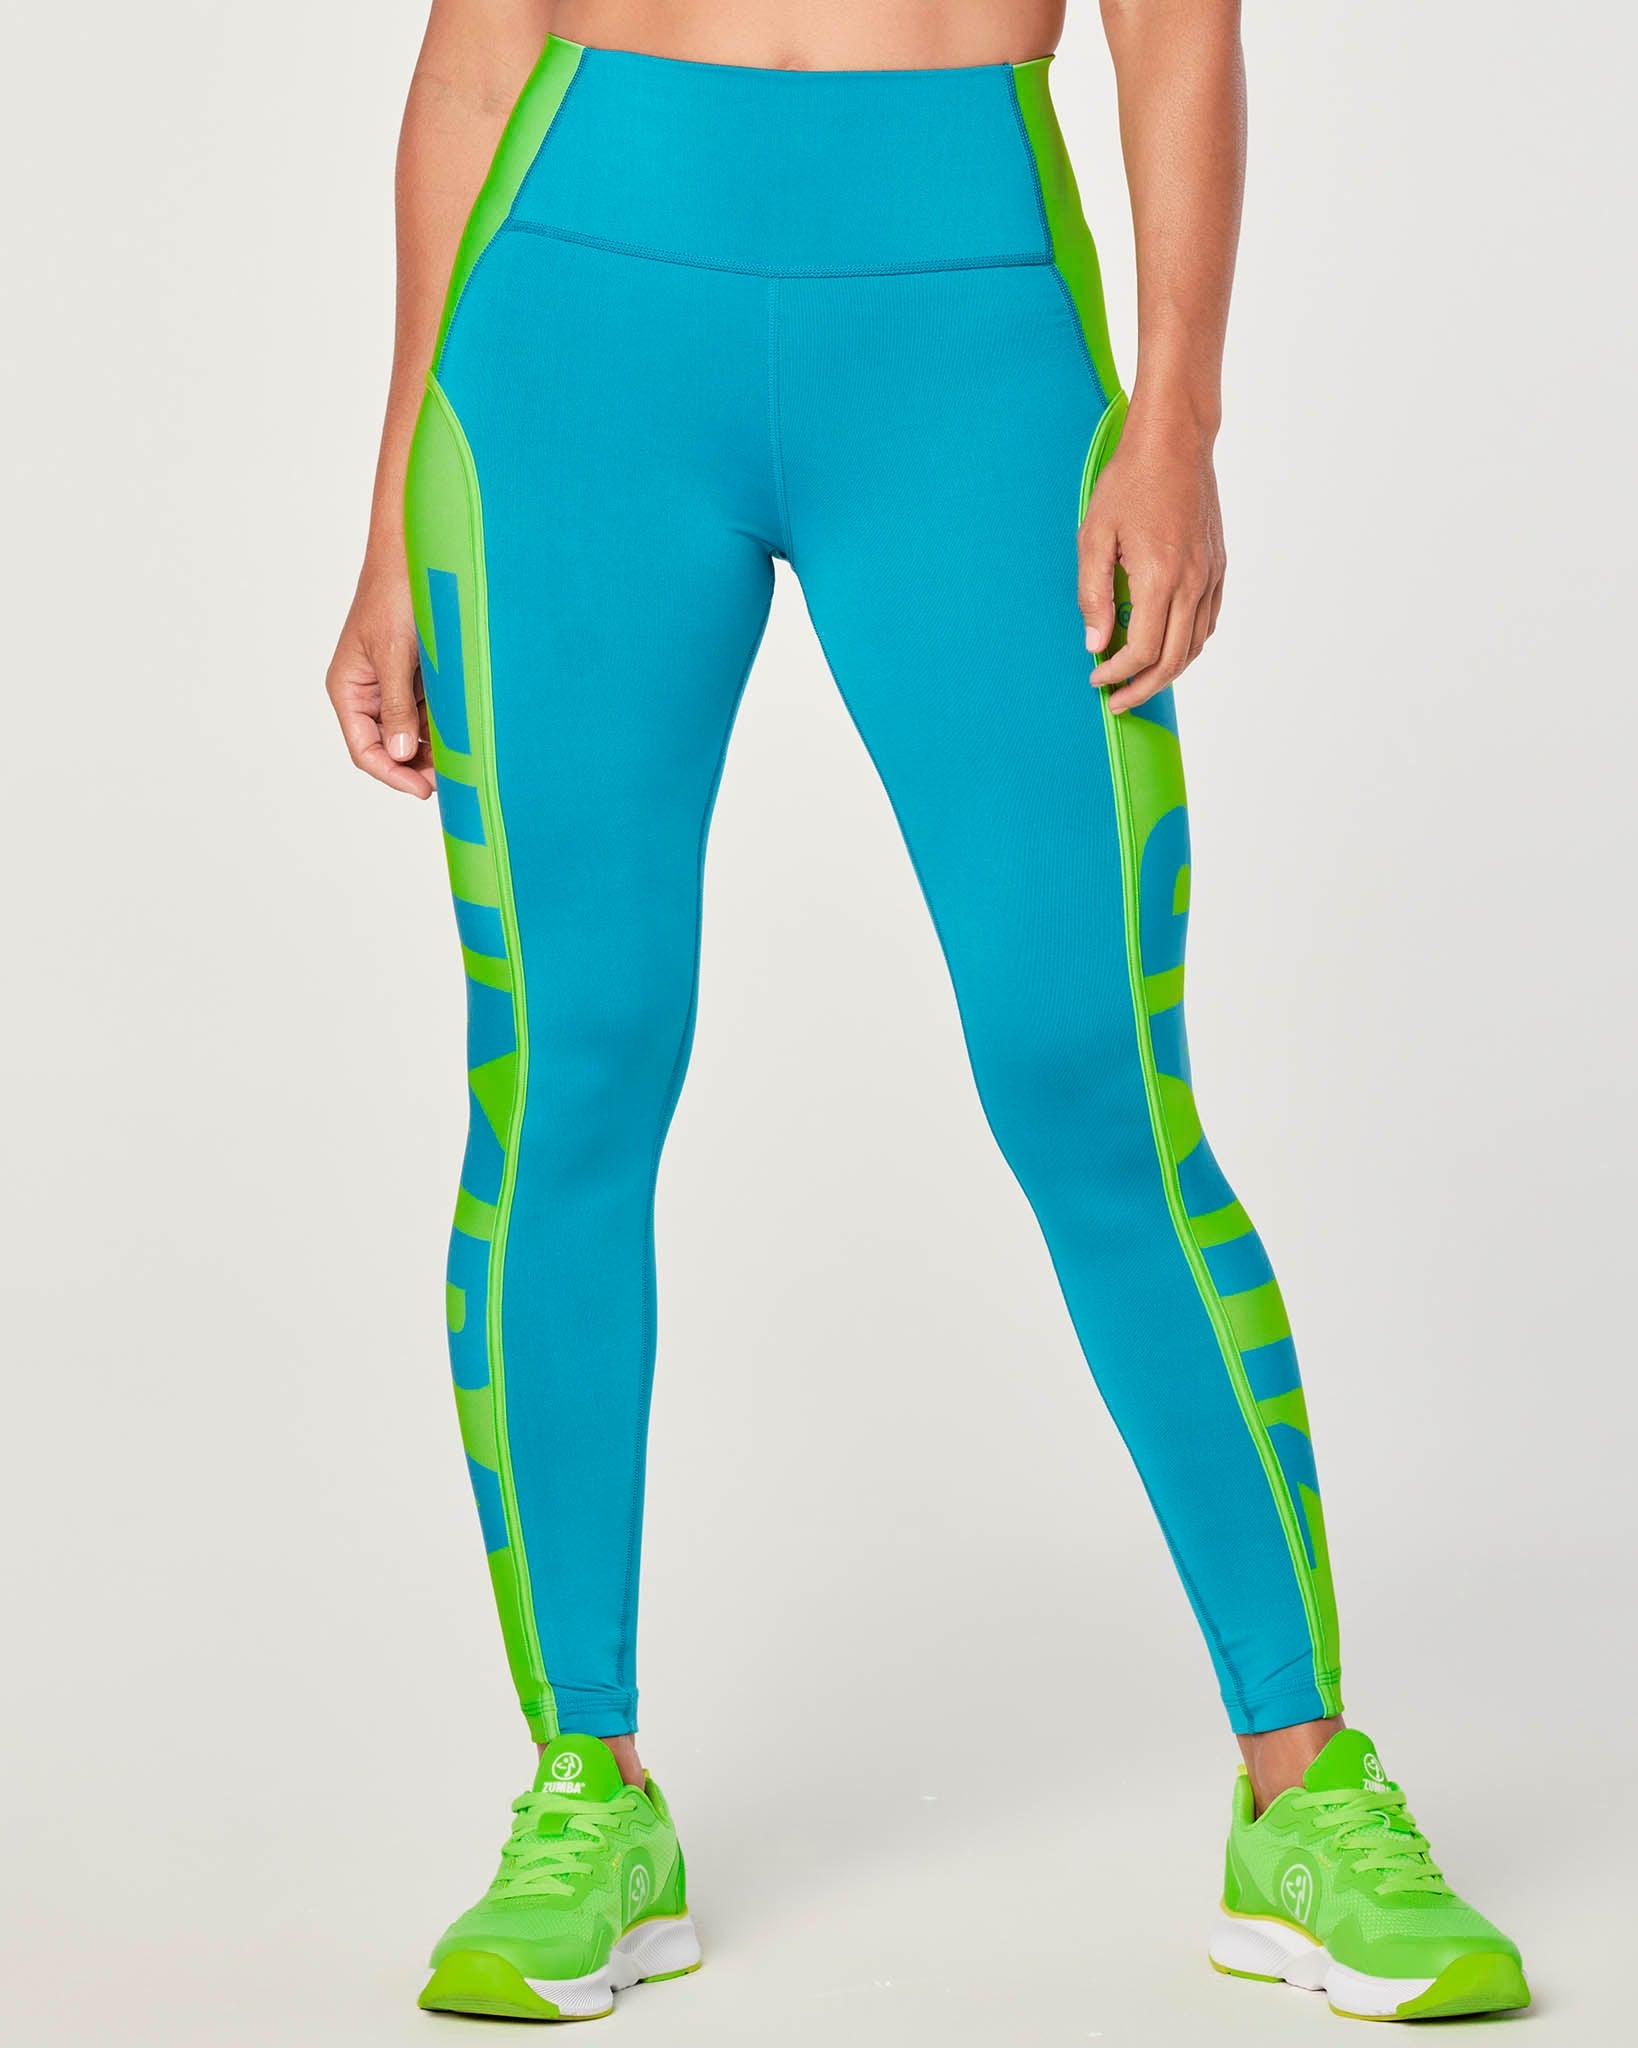 Nebula Serisi joyastyle.com #tayt #leggings #pilates #yoga #fitness #zumba  #sportswear